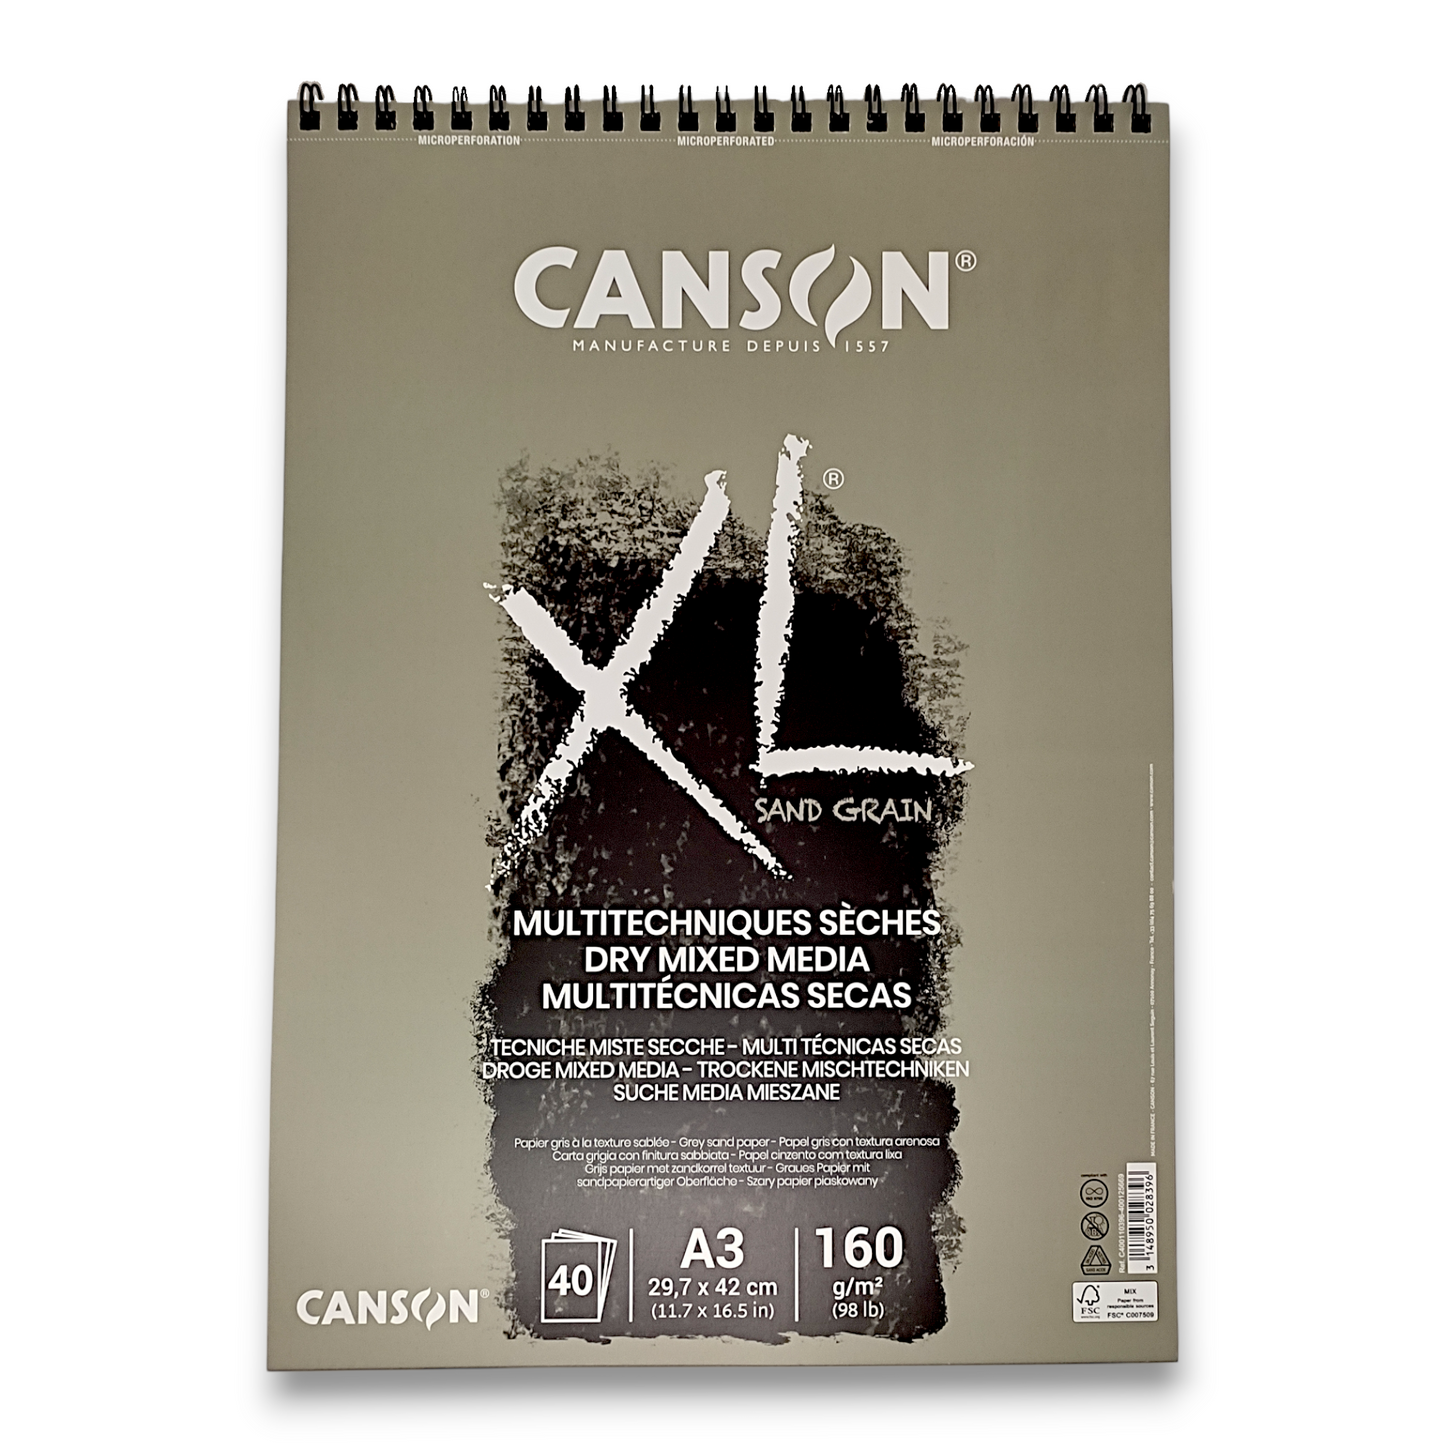 CANSON XL SAND GRAIN - Carta grigia sabbiata